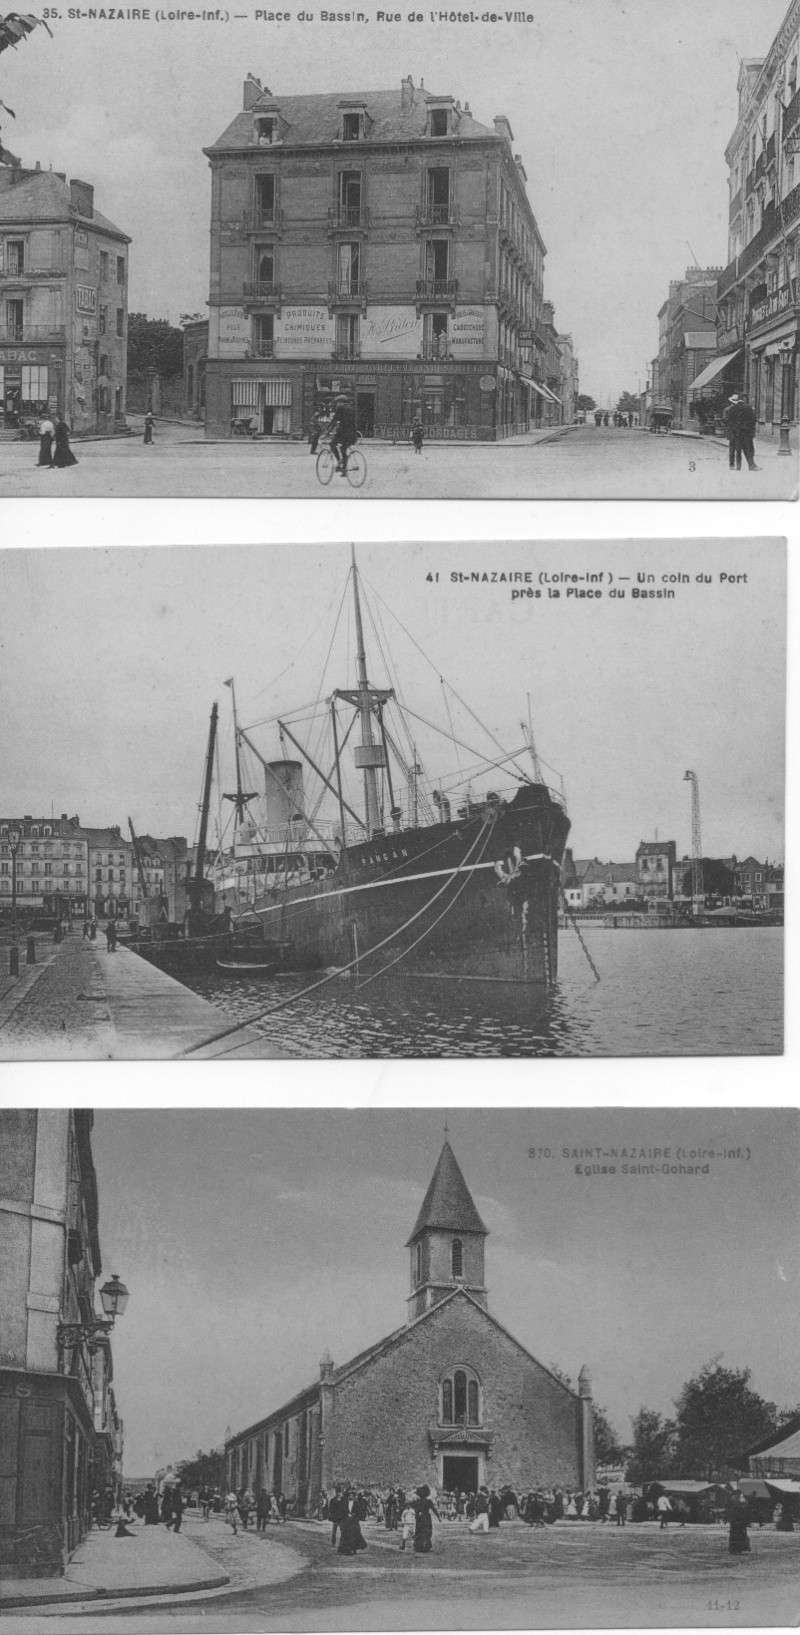 carte postale St-Nazaire Numari13